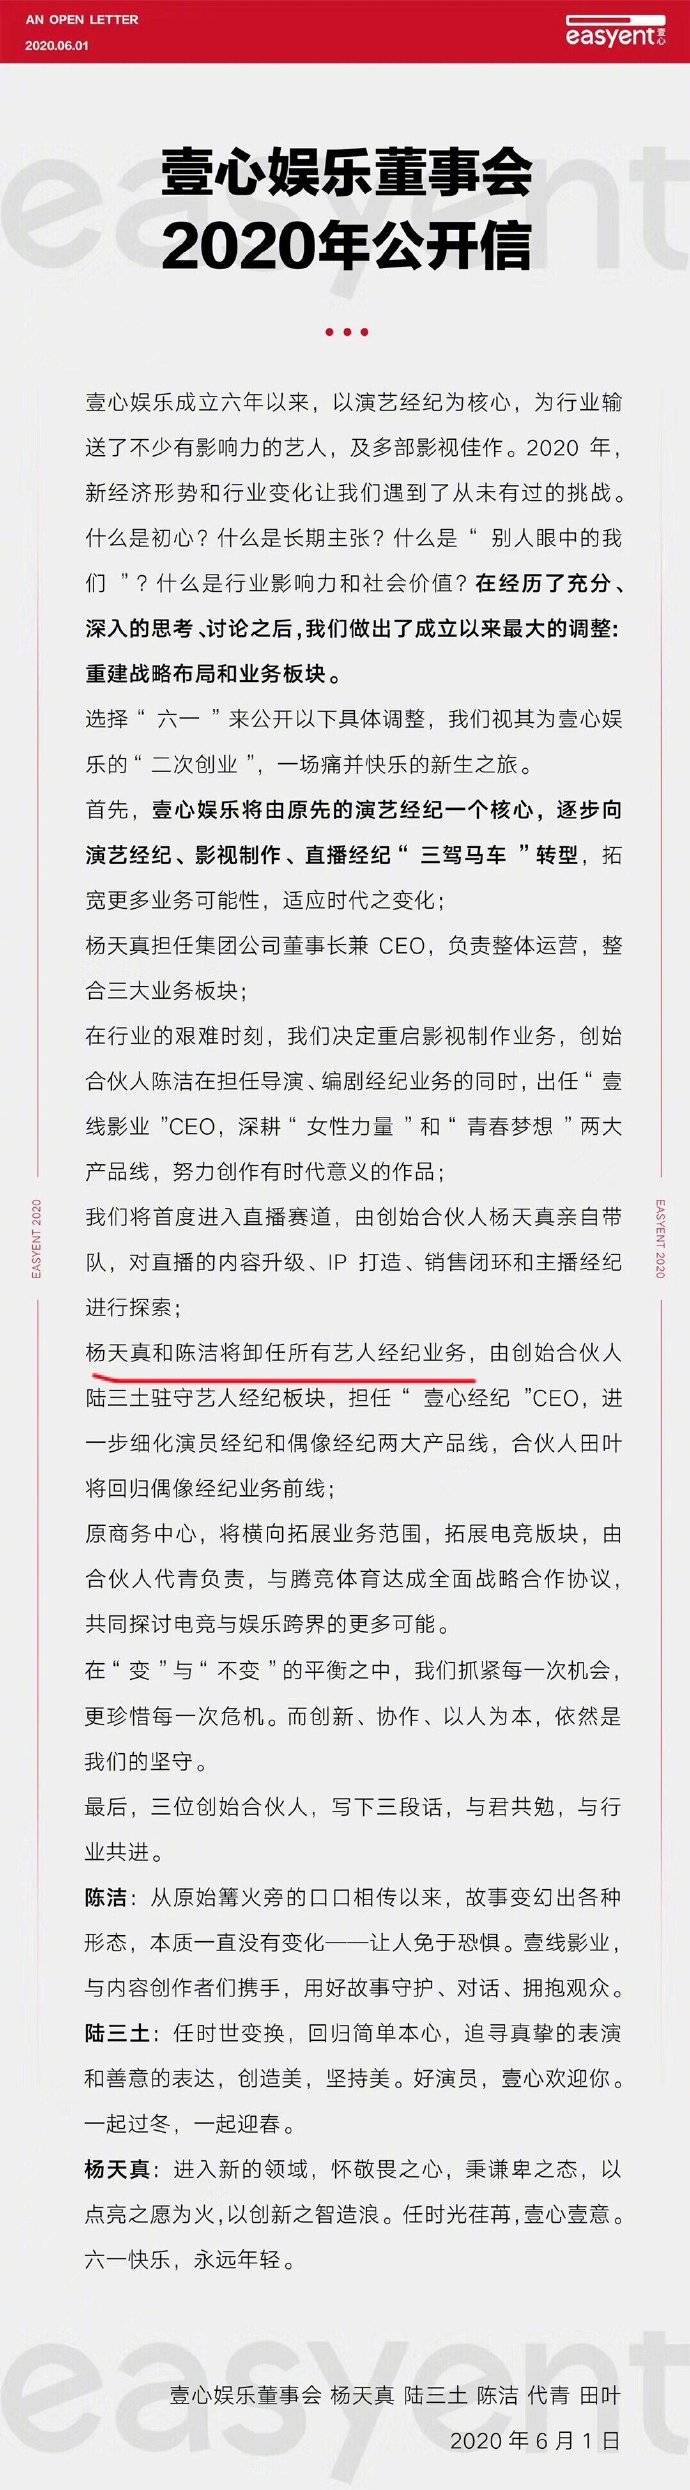 壹心娱乐宣布转型进军直播领域 杨天真将卸任所有艺人经纪业务